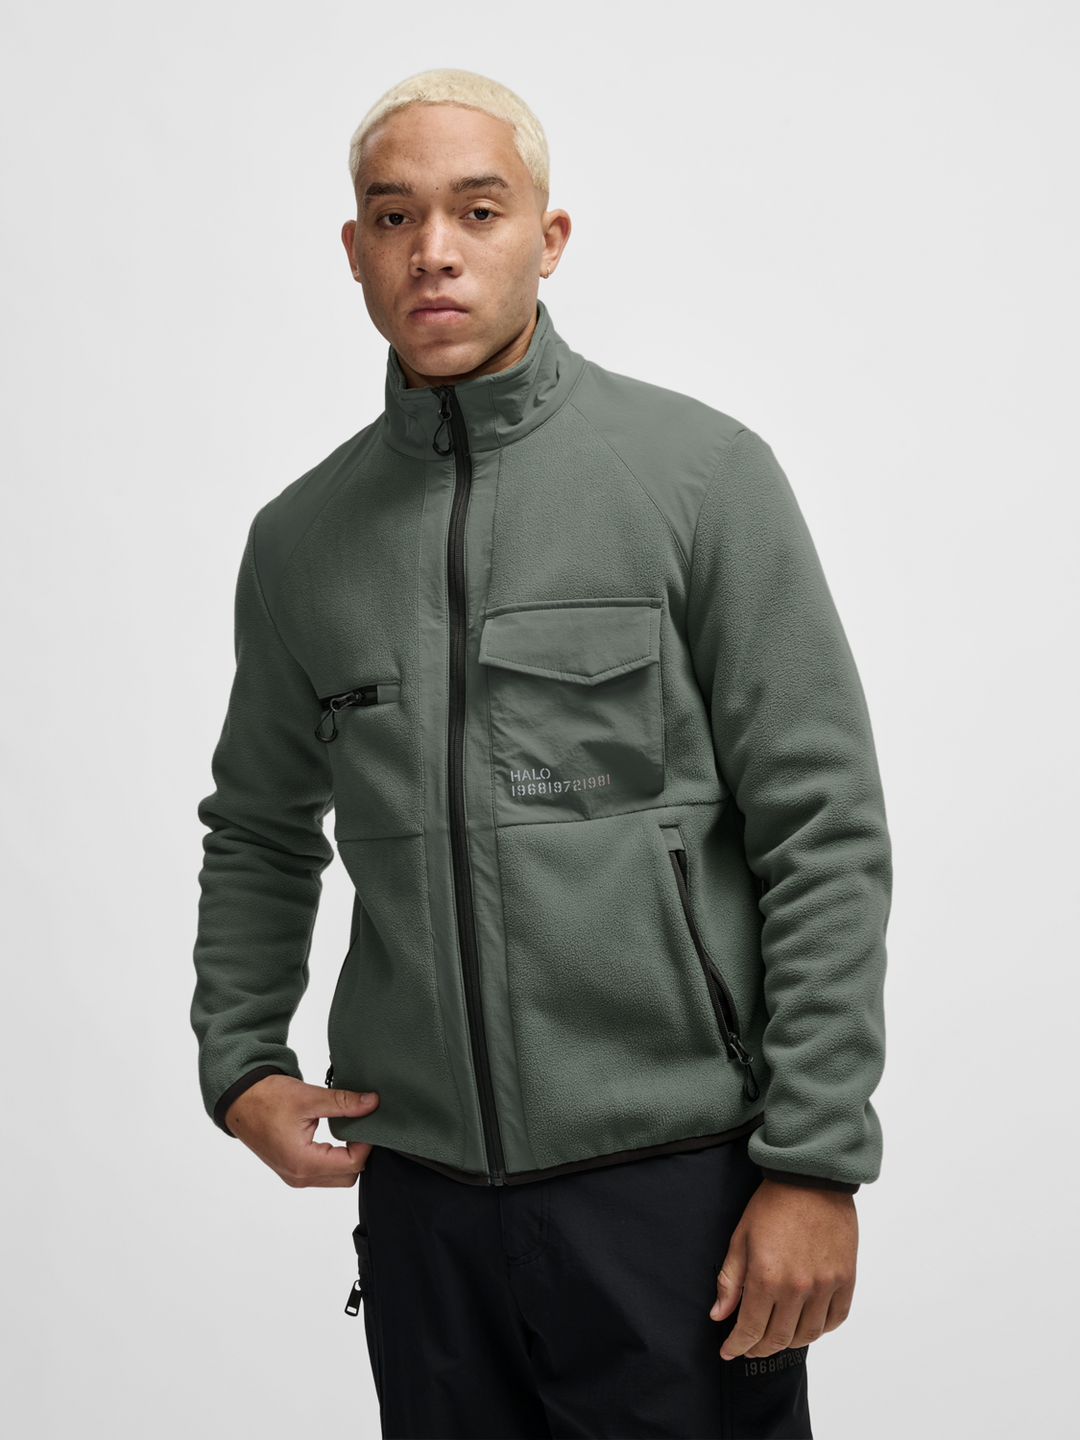 Halo Paneled Fleece jacket